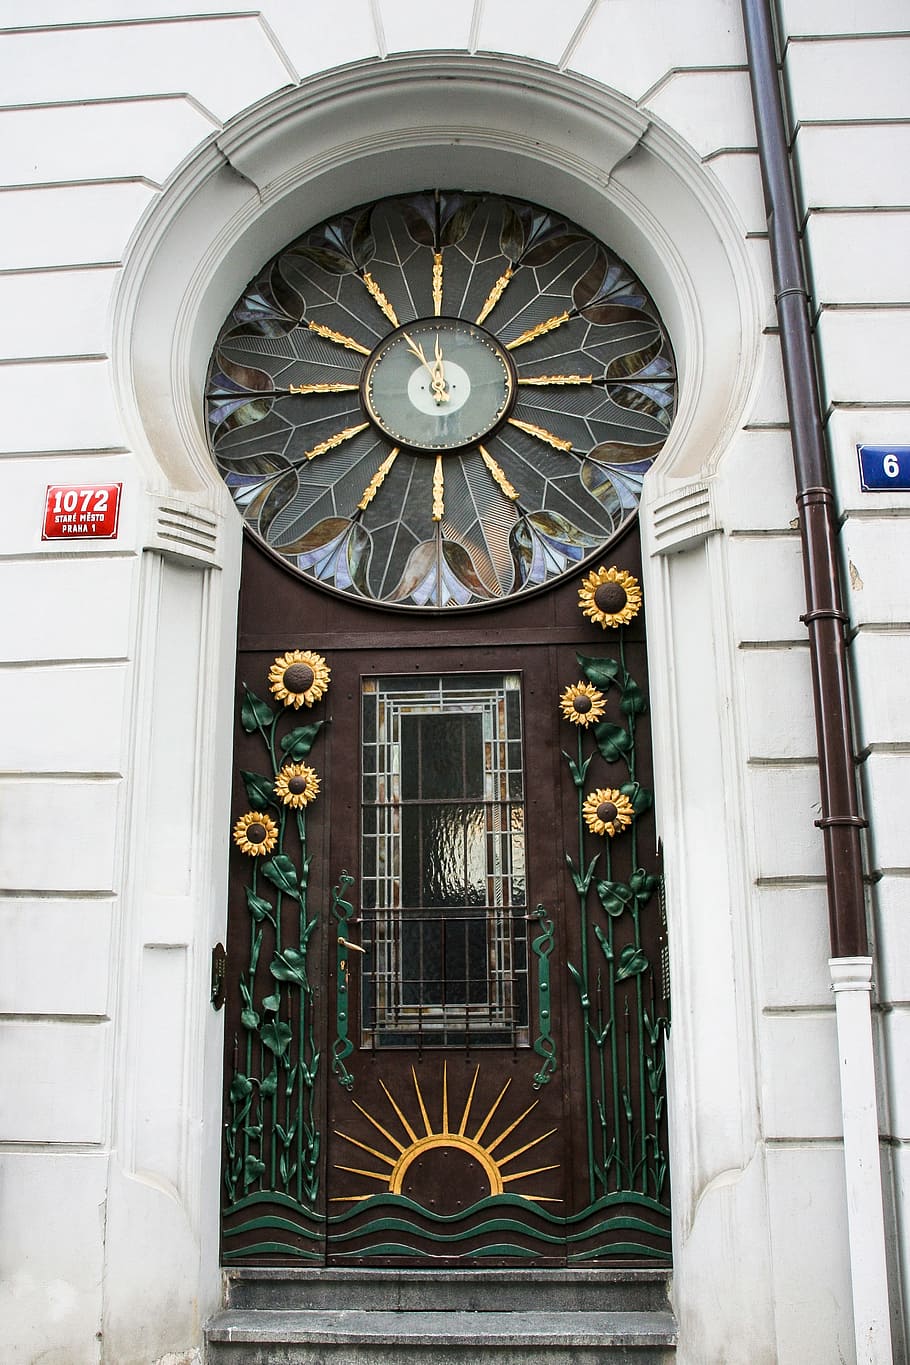 プラハ, 旧市街, 正面, ドア, 正面玄関, アールヌーボー, 装飾, 時計, 建築, 華やか